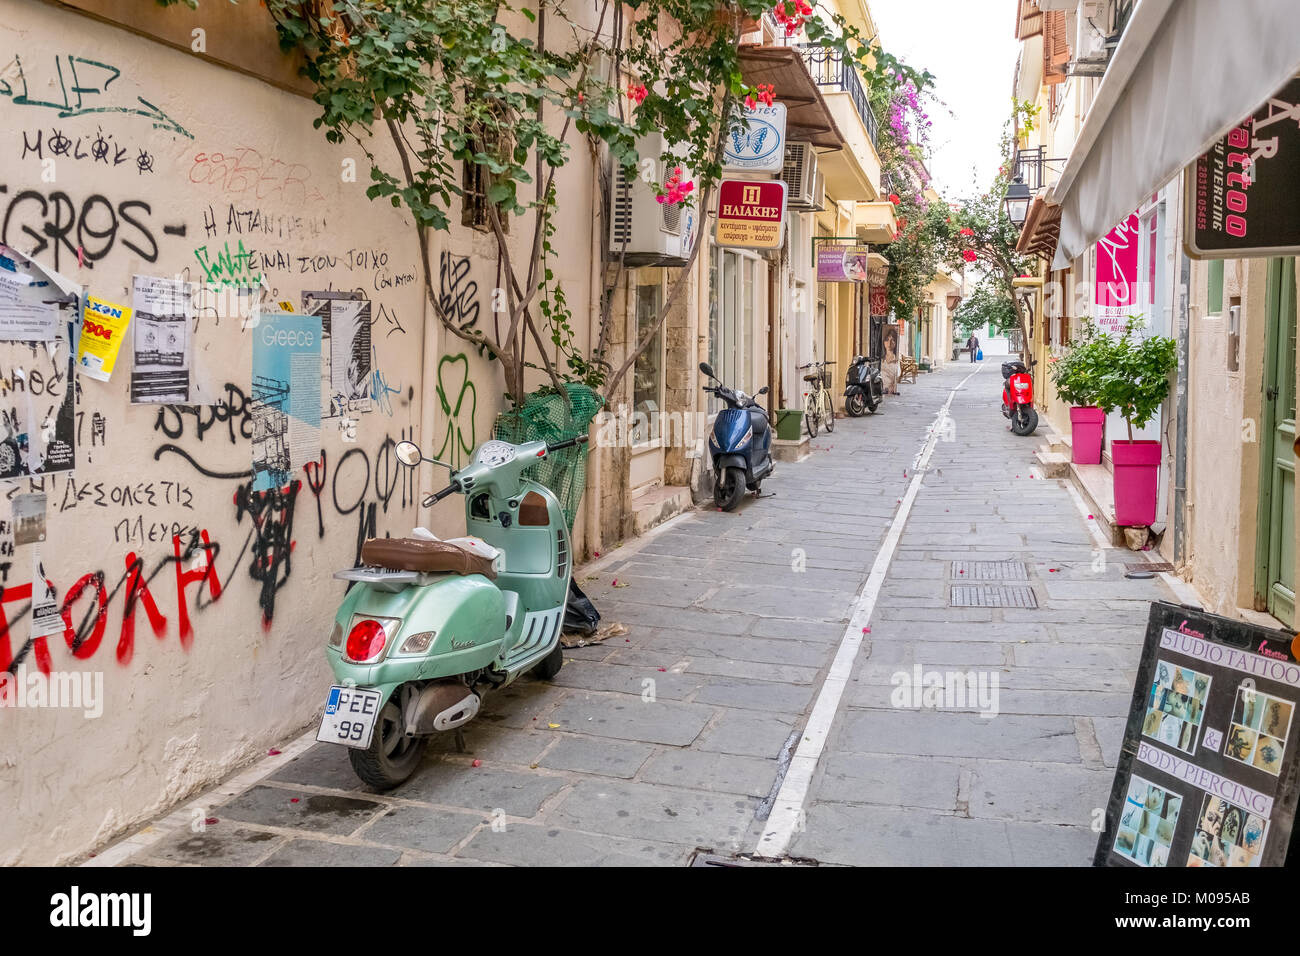 Strada con lo scooter e graffiti nella città vecchia di Rethymno, Europa, Creta, Grecia, ,, Rethimno, Europa, Creta, Grecia, viaggi, turismo, destinazione Foto Stock